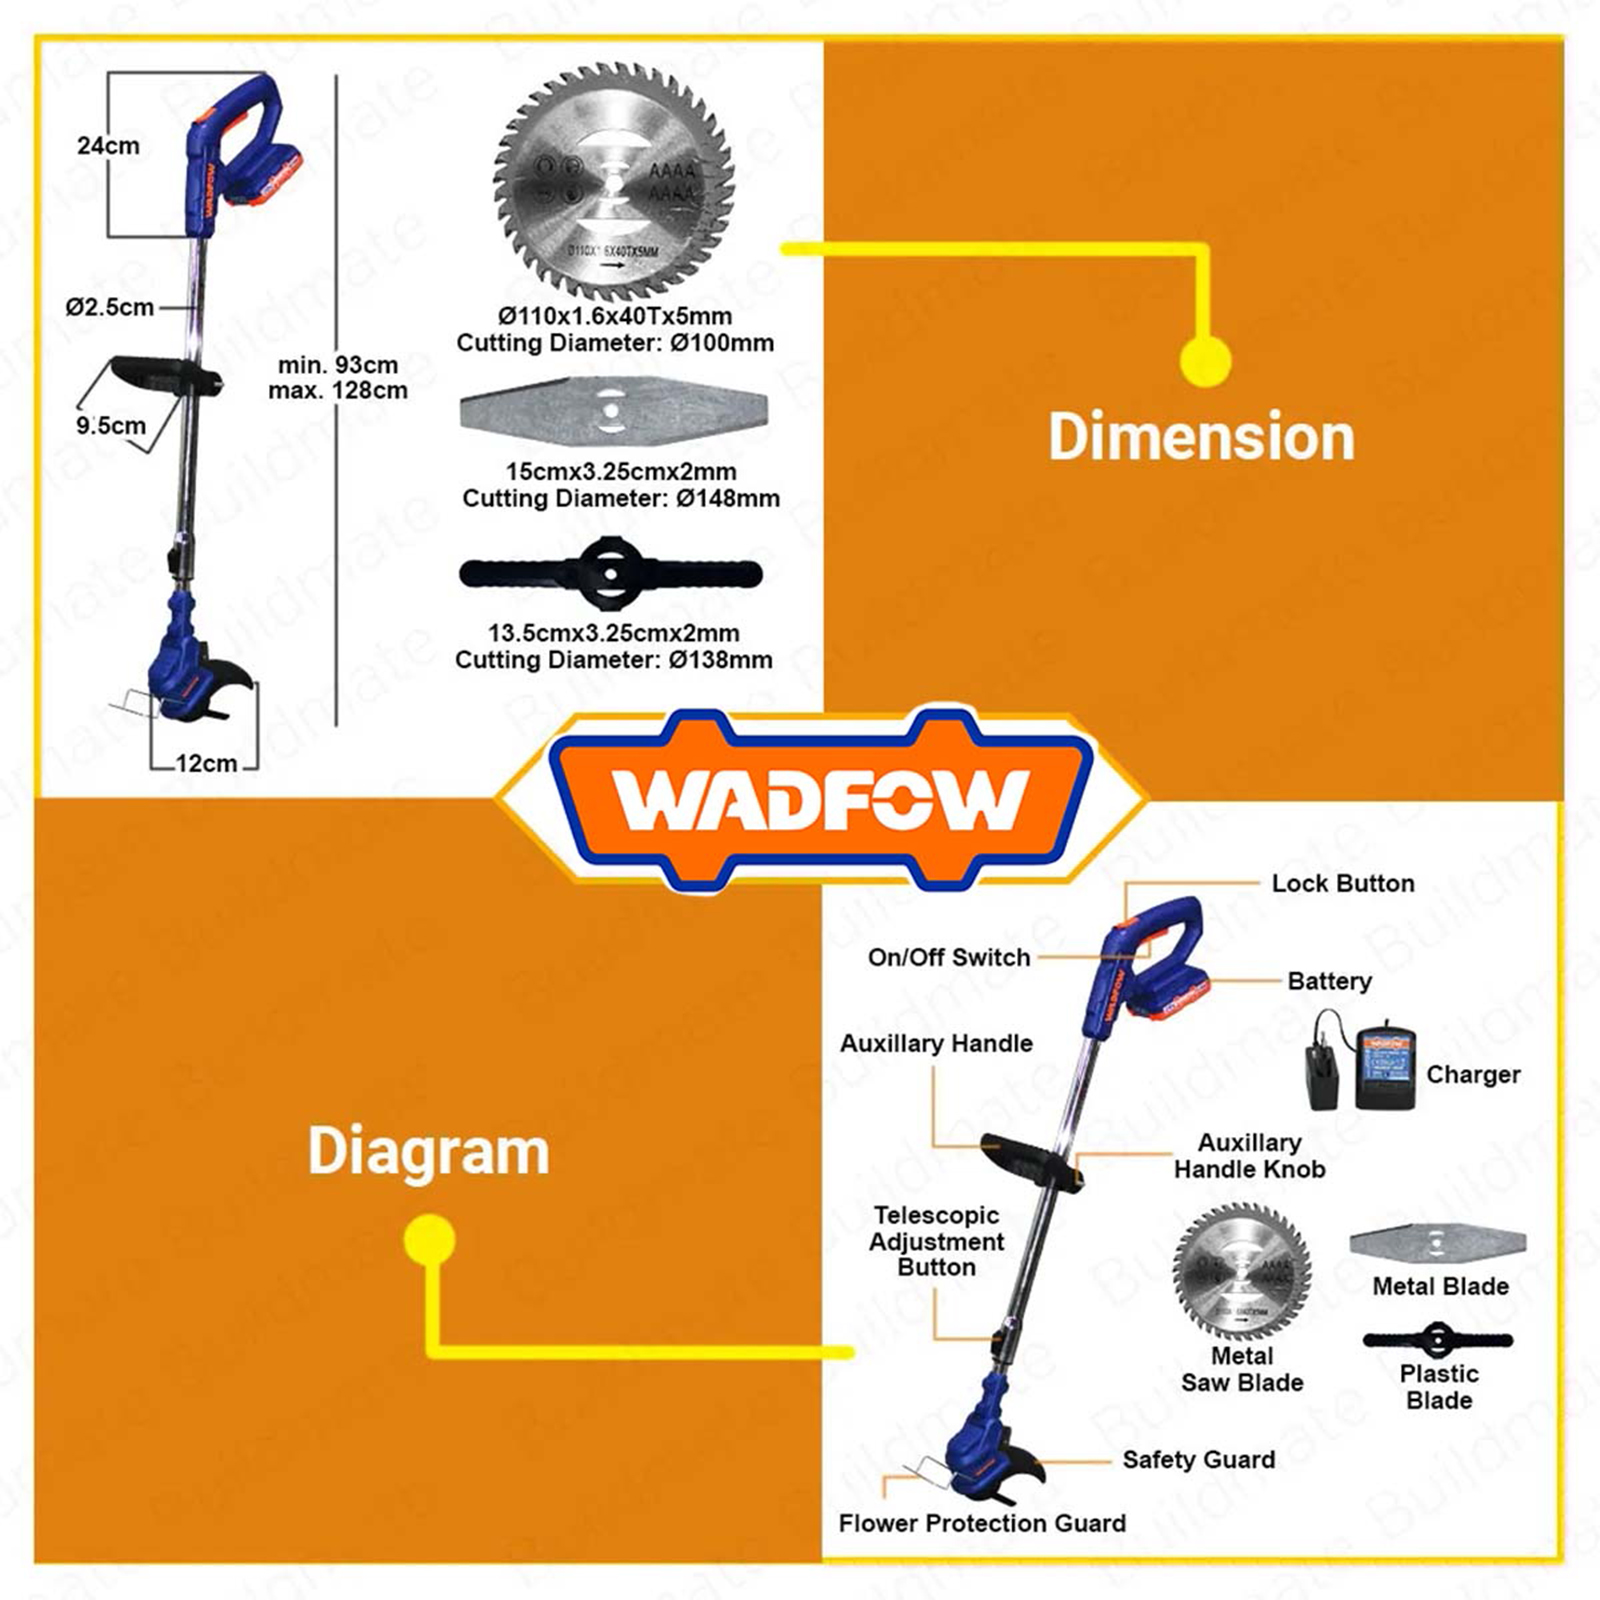 Chi tiết các bộ phận của máy cắt cỏ Wadfow